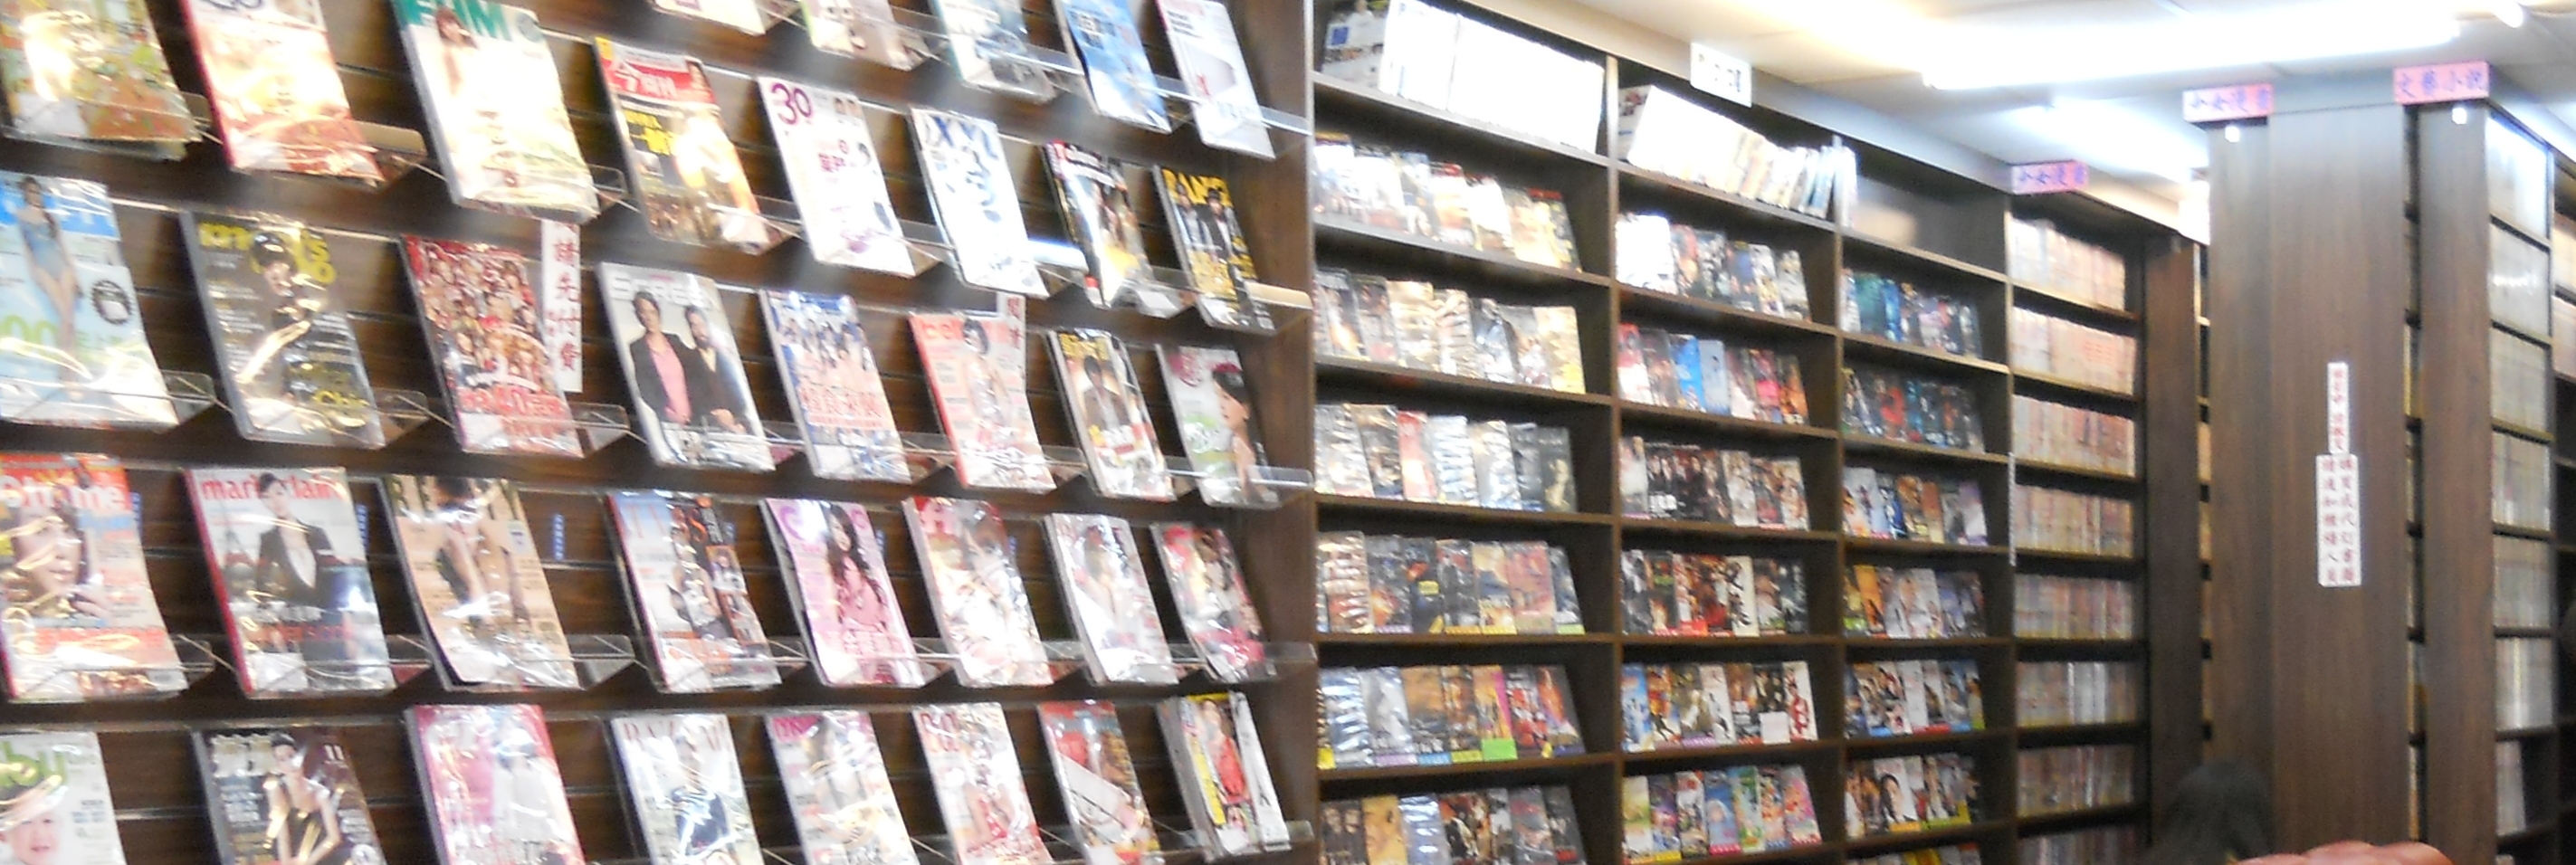 【頂讓漫畫小說店】 小說漫畫DVD店頂讓 - 20141210162155-200183680.JPG(圖)